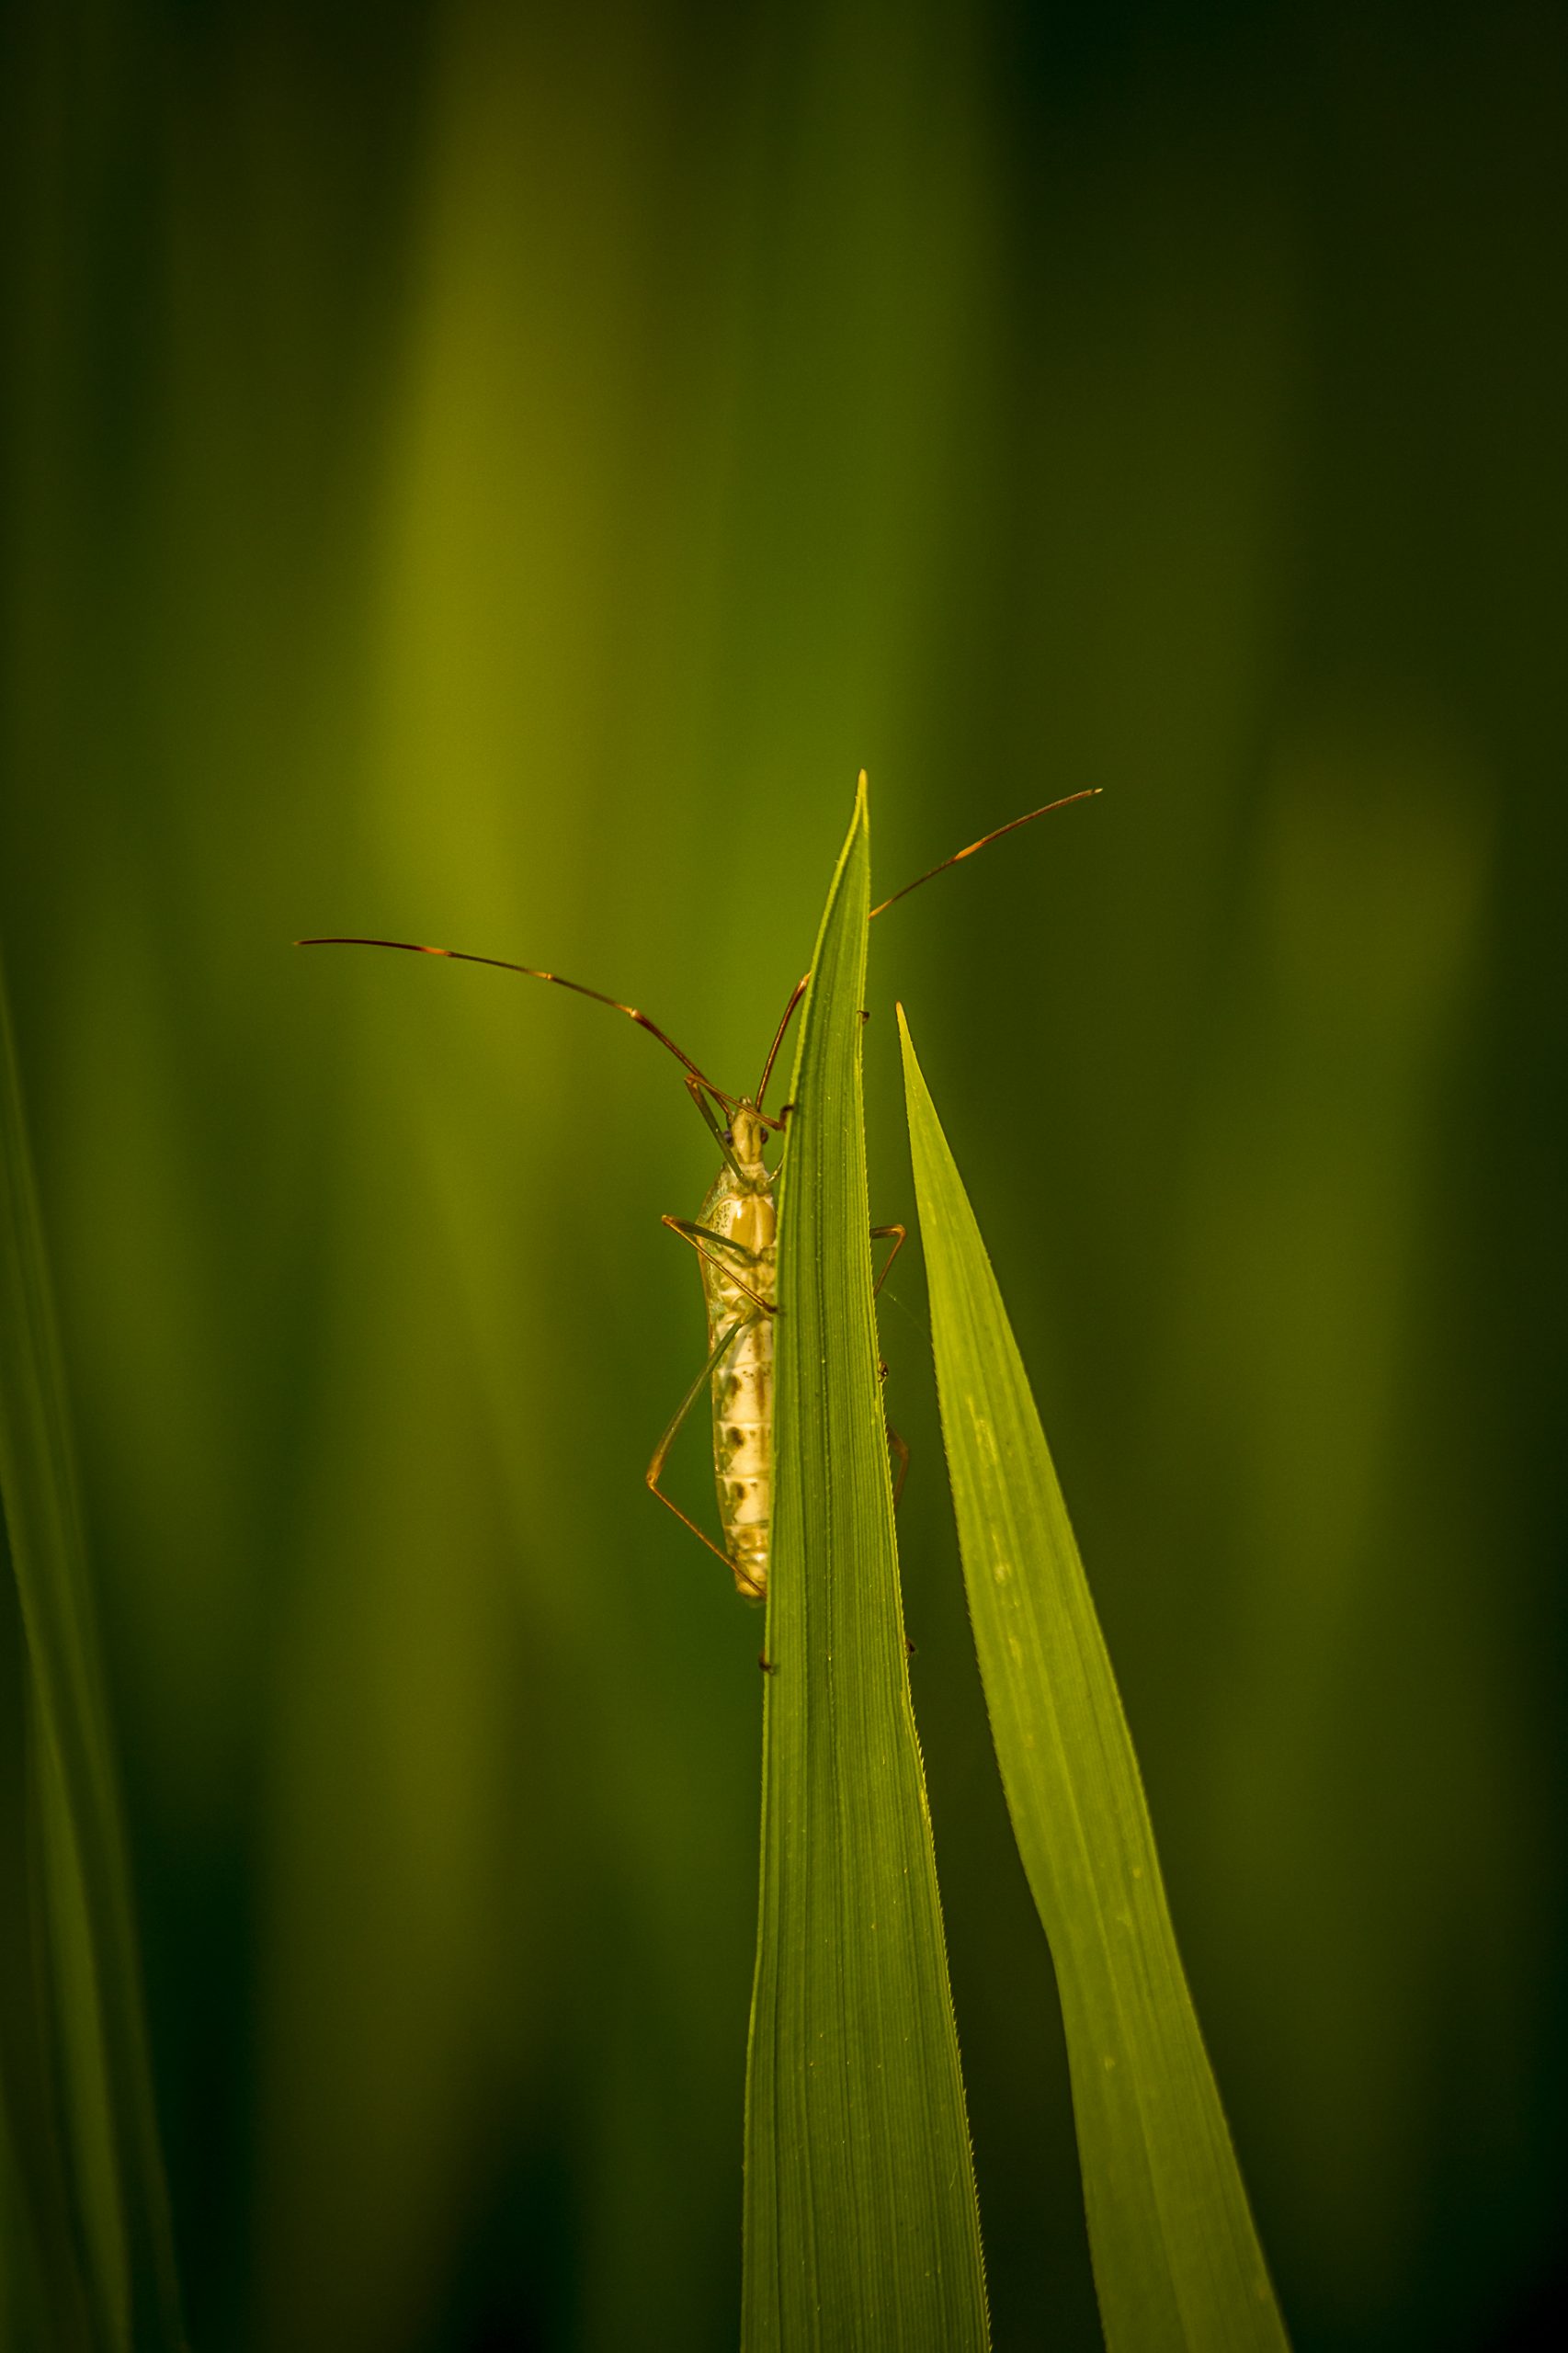 Stink Bug on a grass leaf